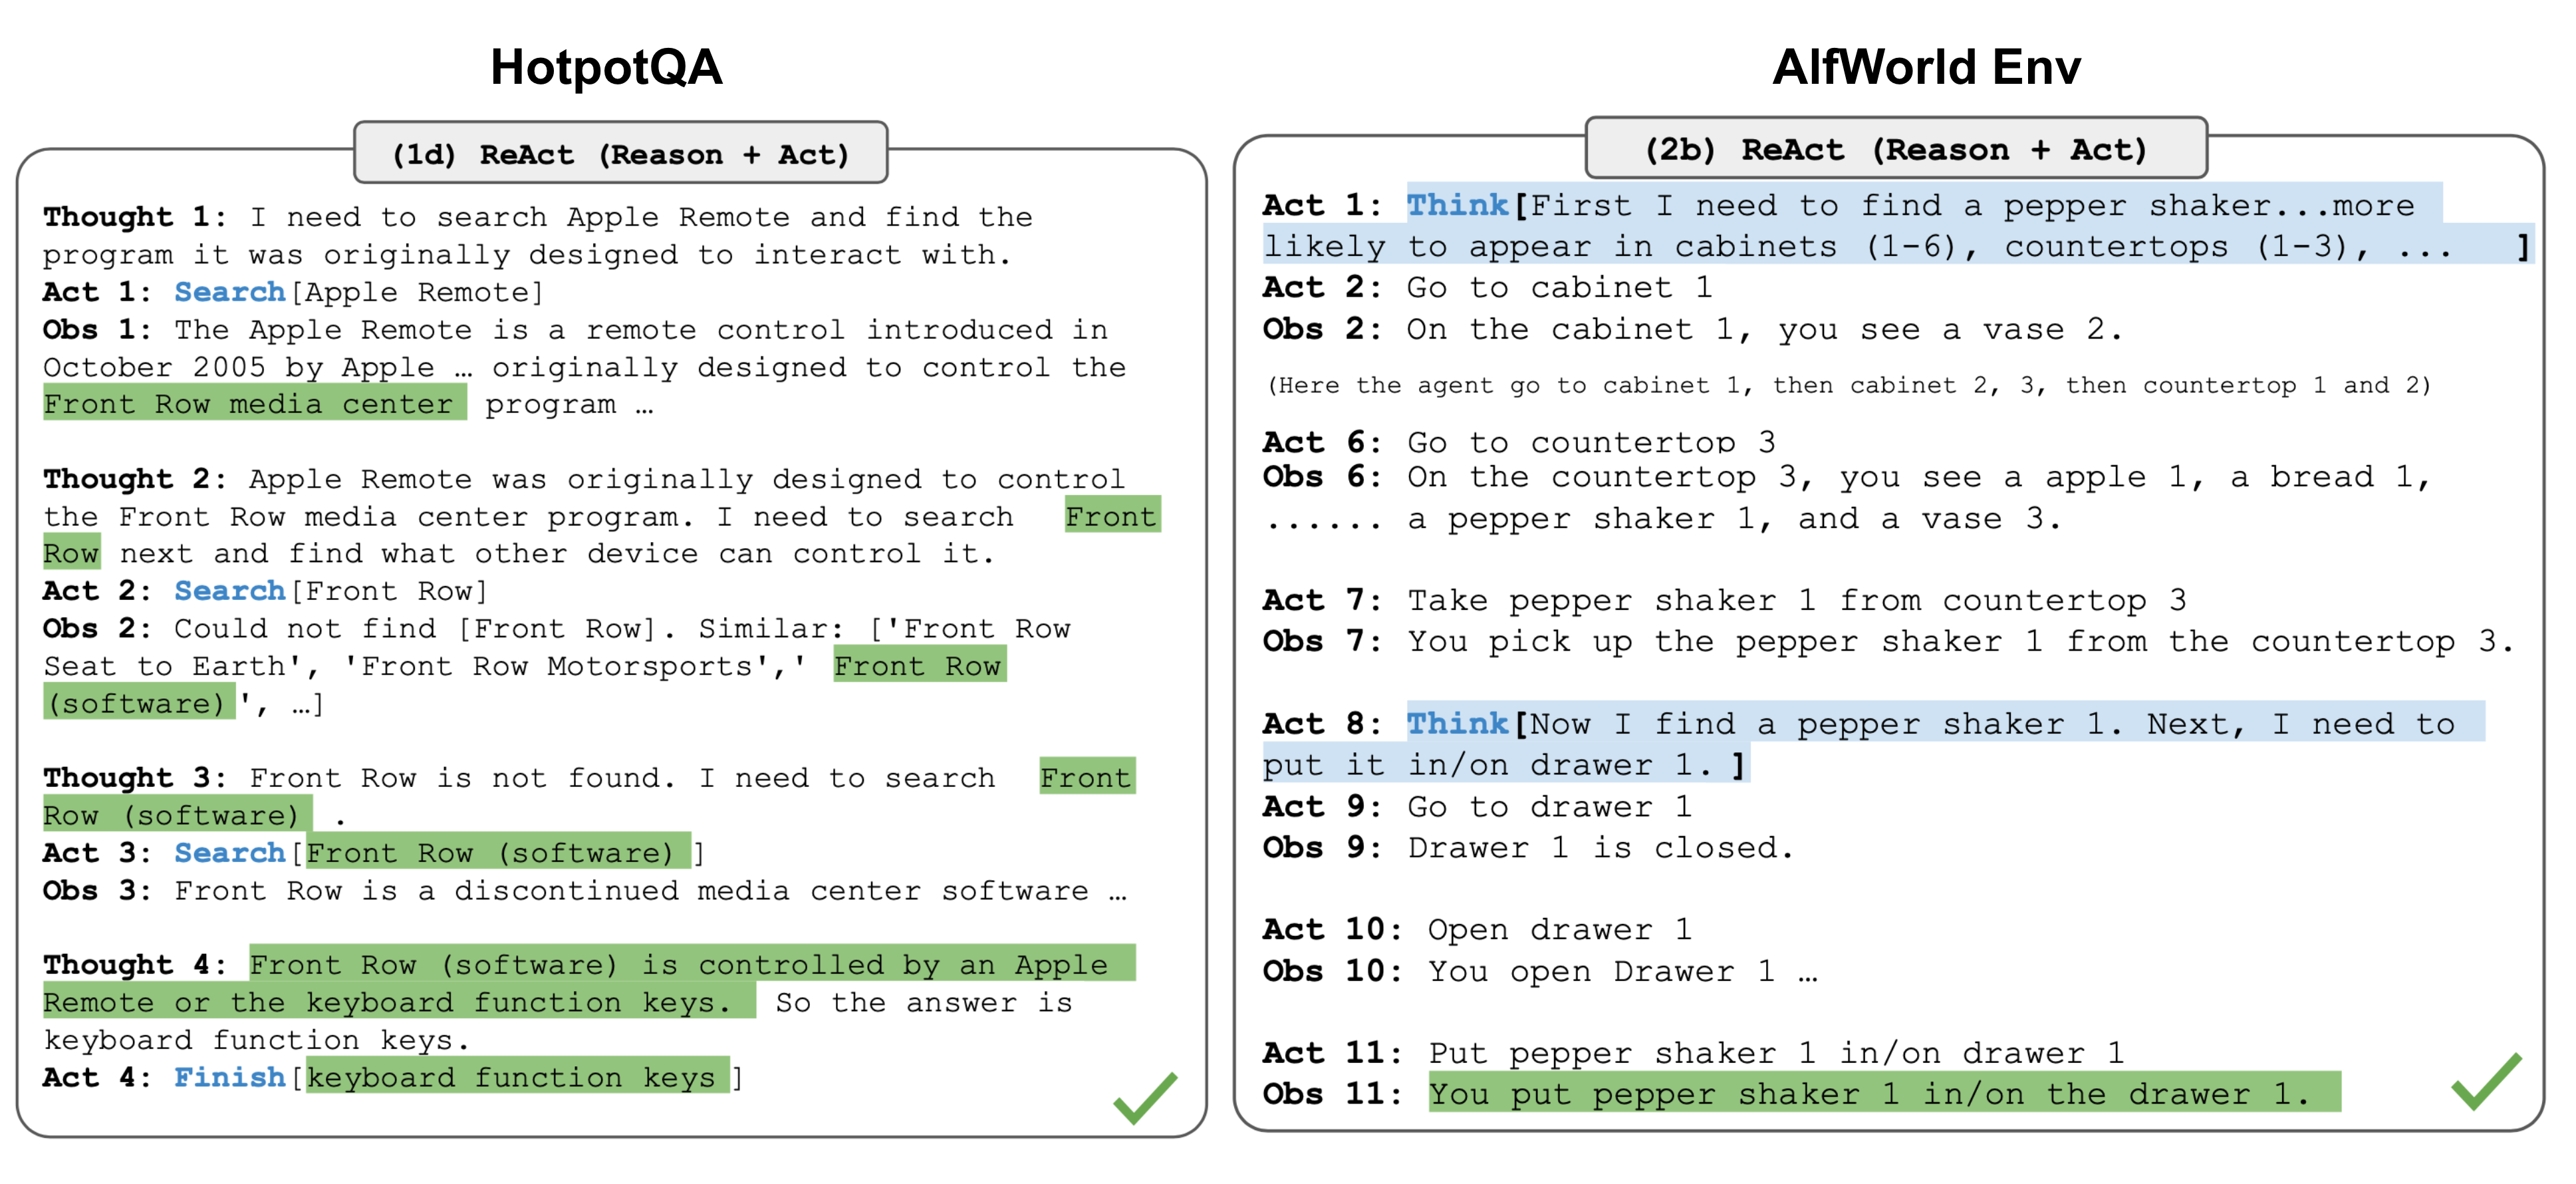 知识密集型任务的推理轨迹举例（如HotpotQA, FEVER）以及决策任务举例（如：AlfWorld Env, WebShop）